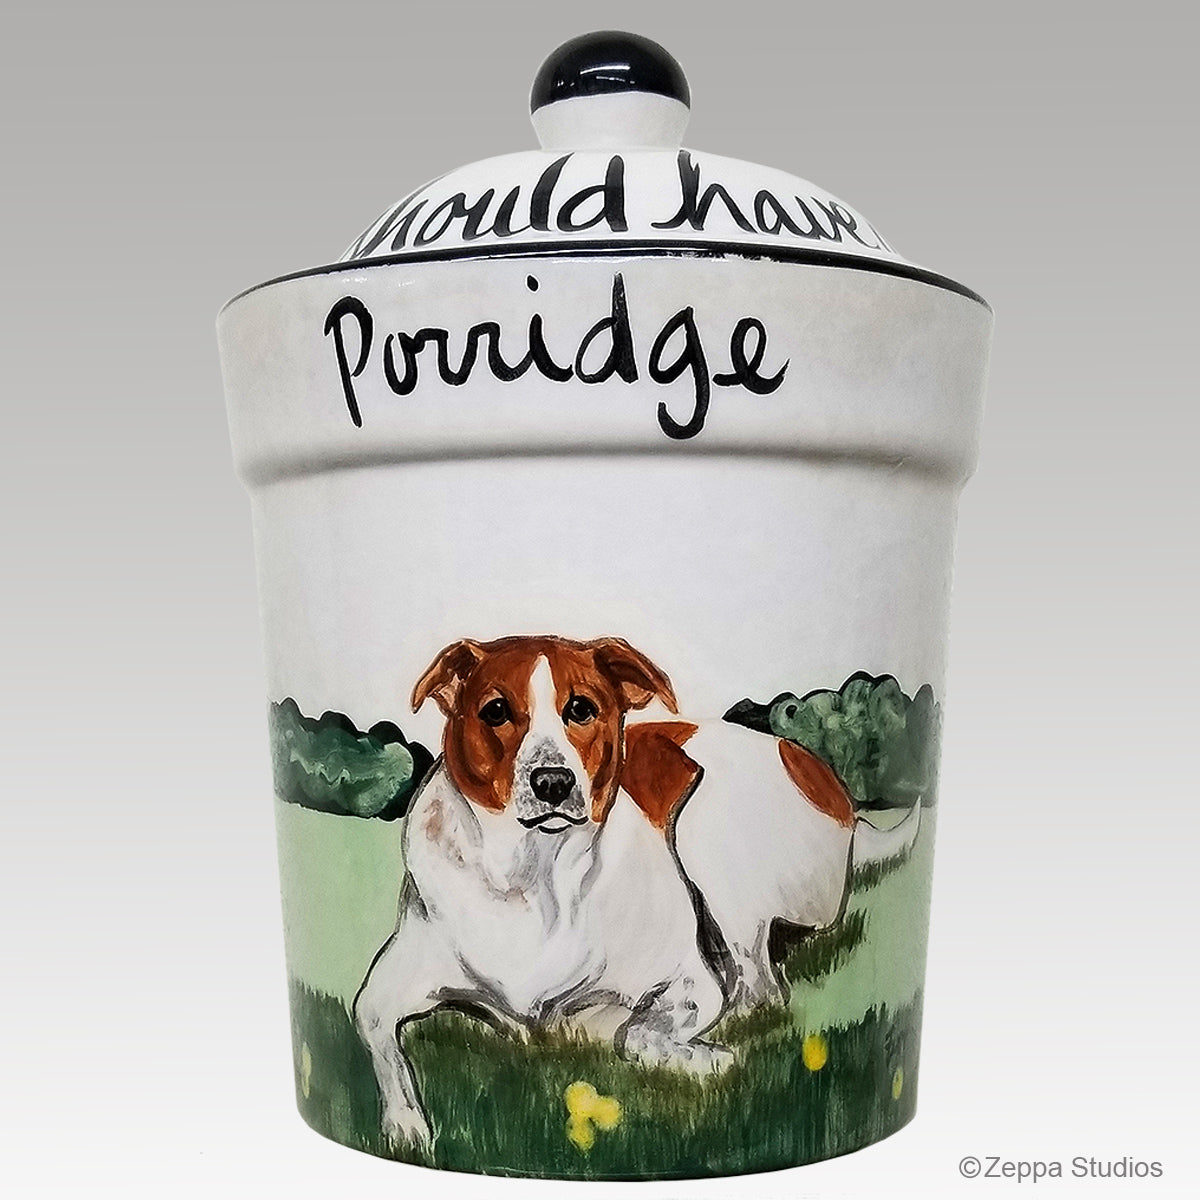 Hand Painted Custom Treat Jar by Zeppa Studios, Porridge